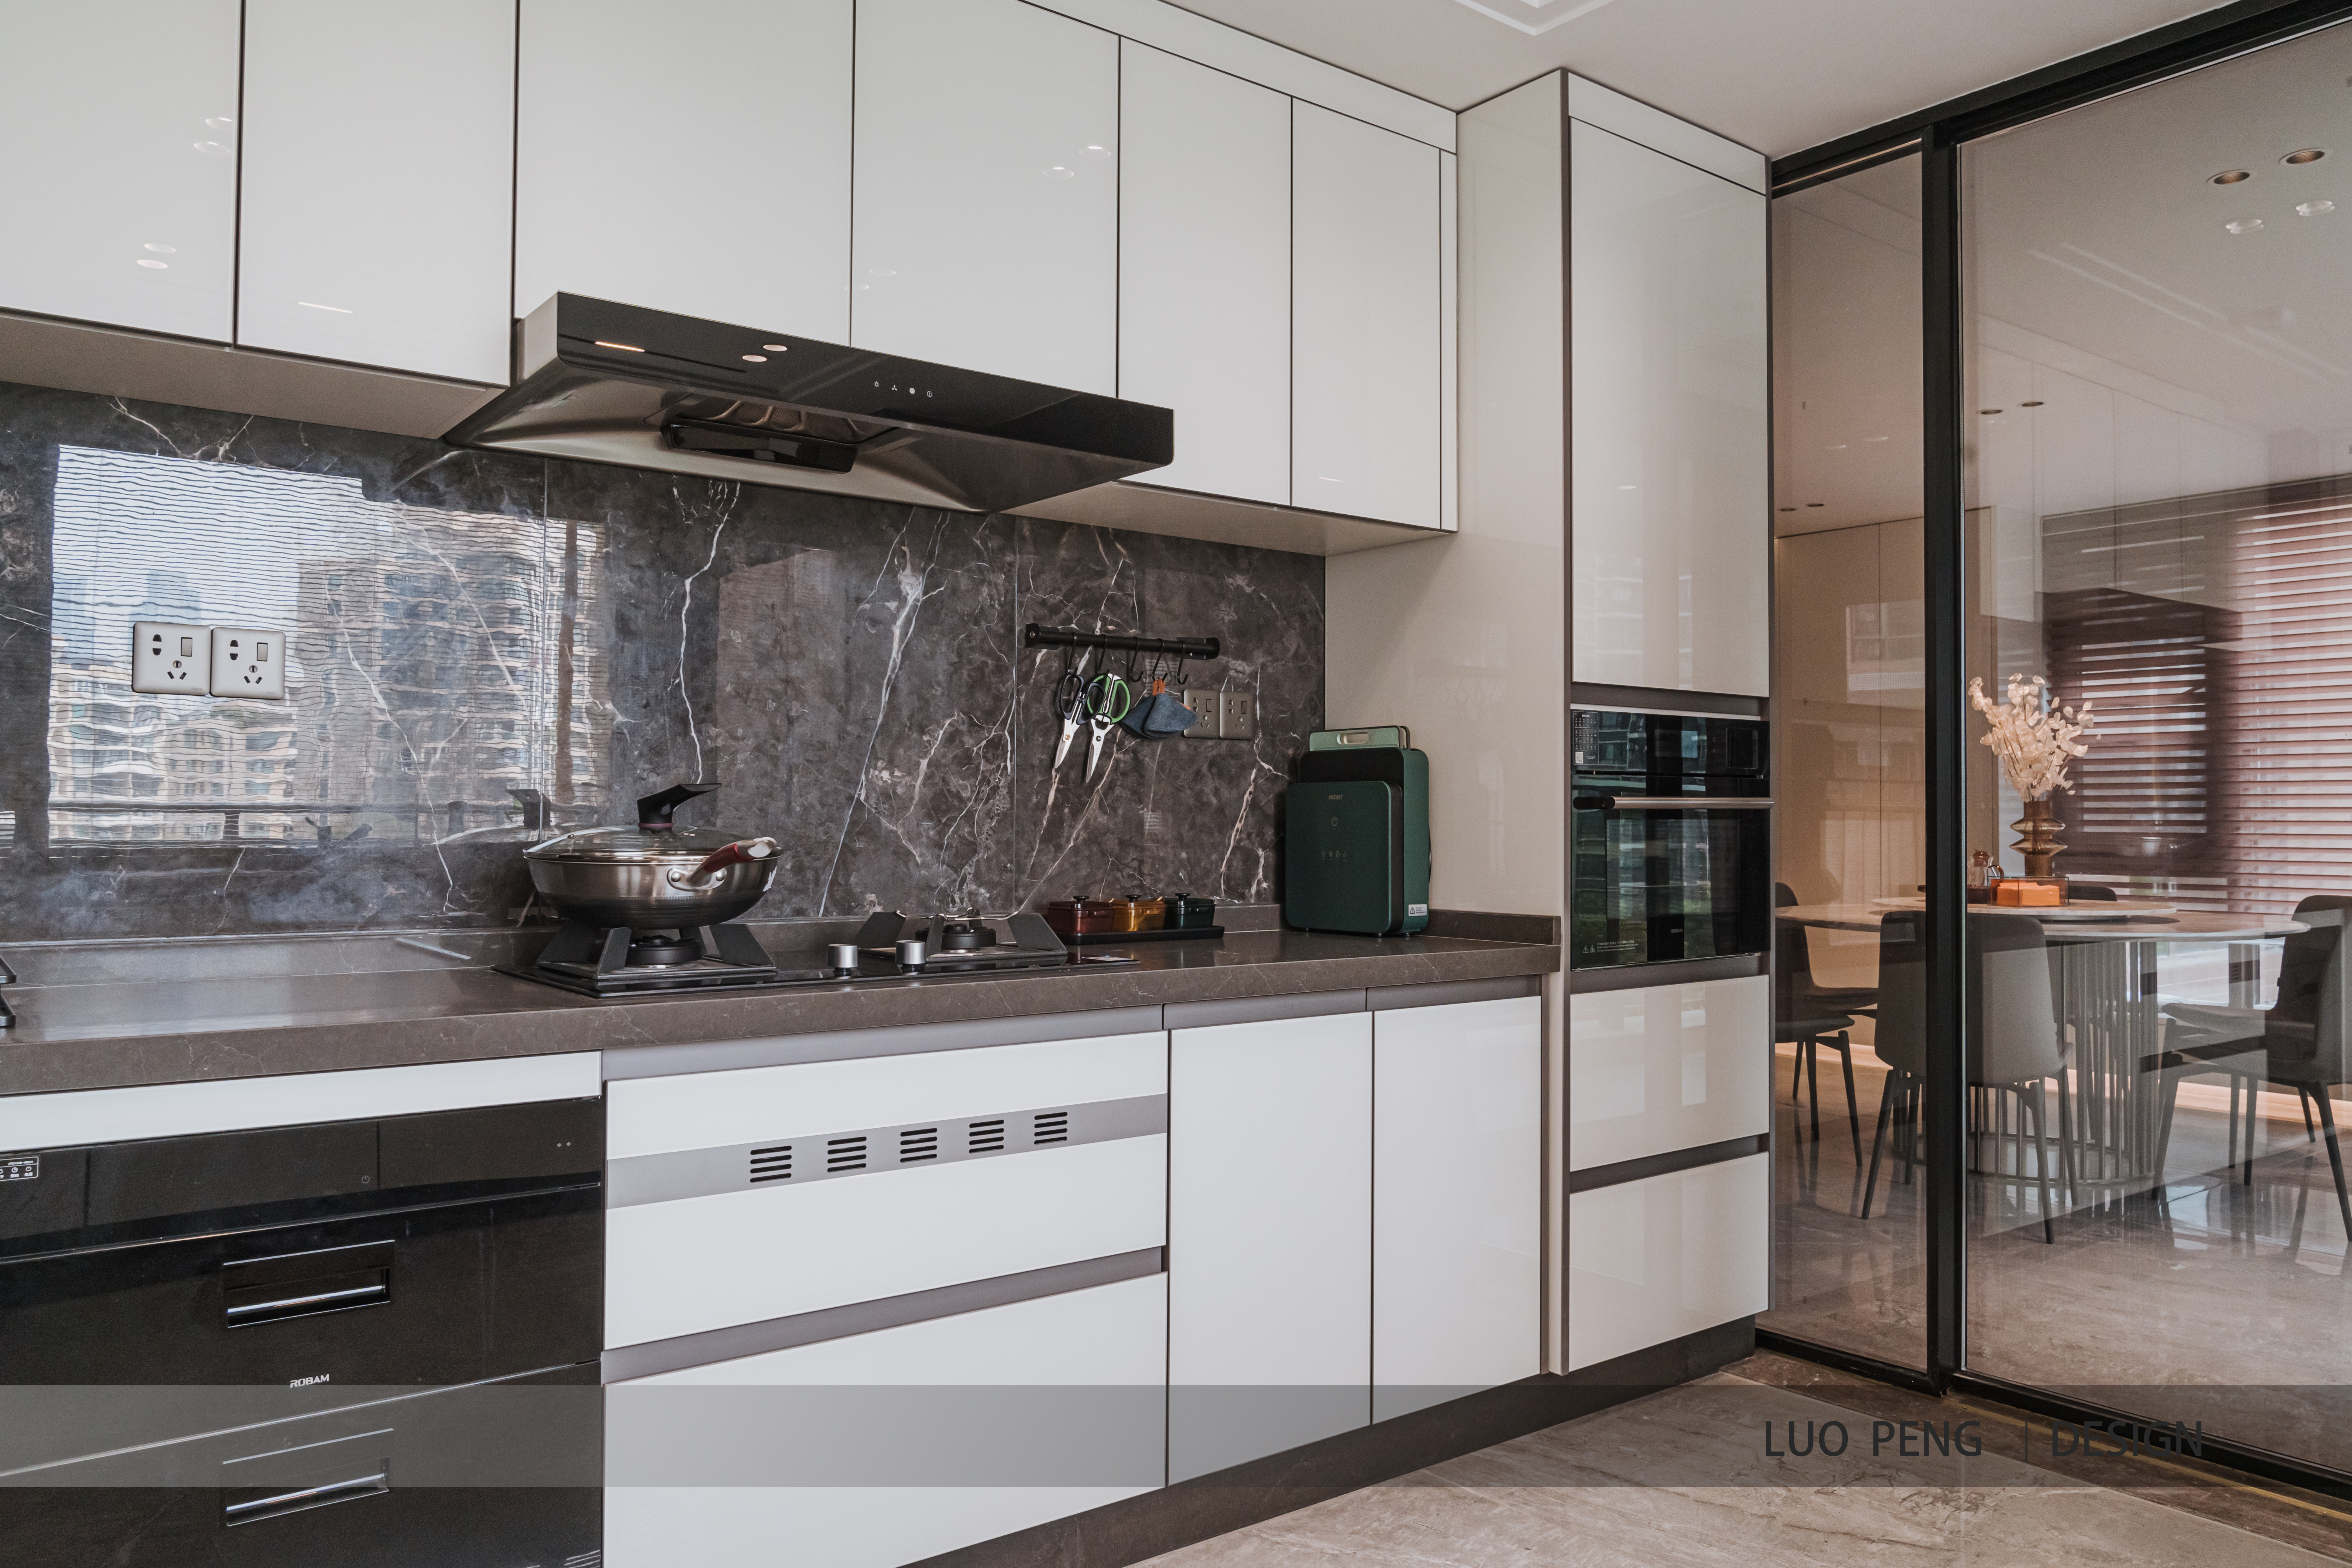 曦湾天馥220平方米现代简约风格平层户型厨房装修效果图